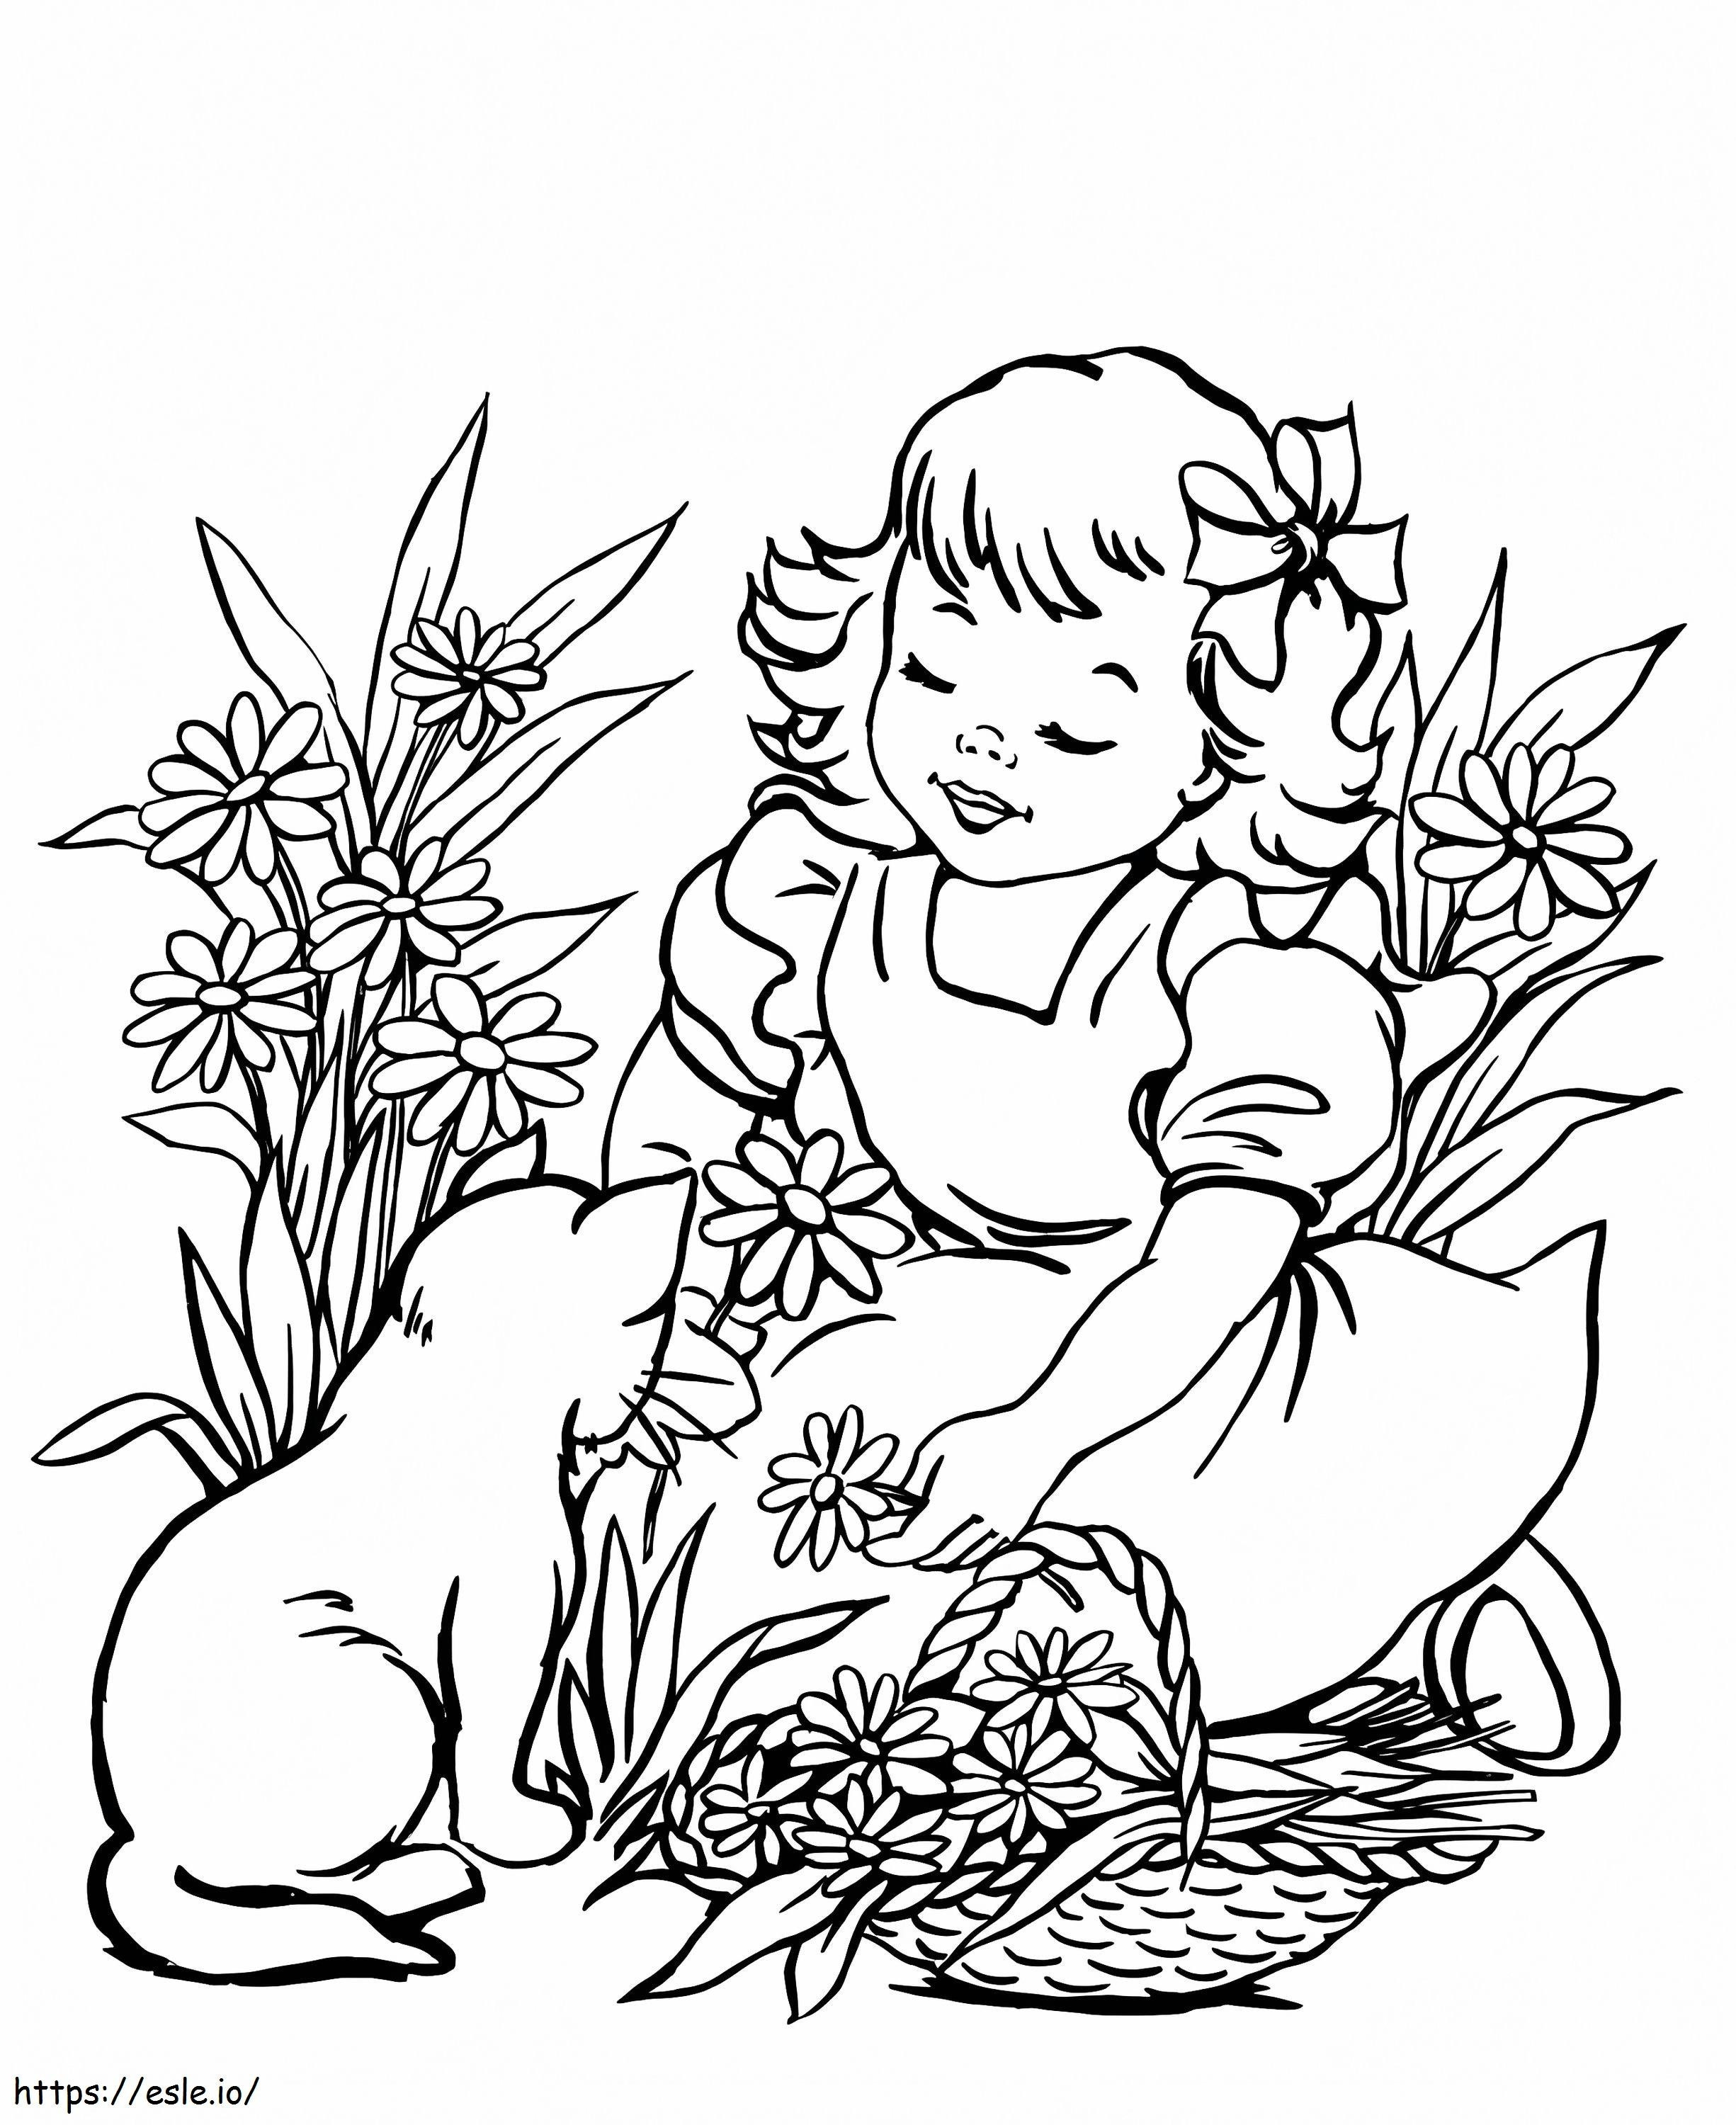 Mała Dziewczynka I Kot kolorowanka